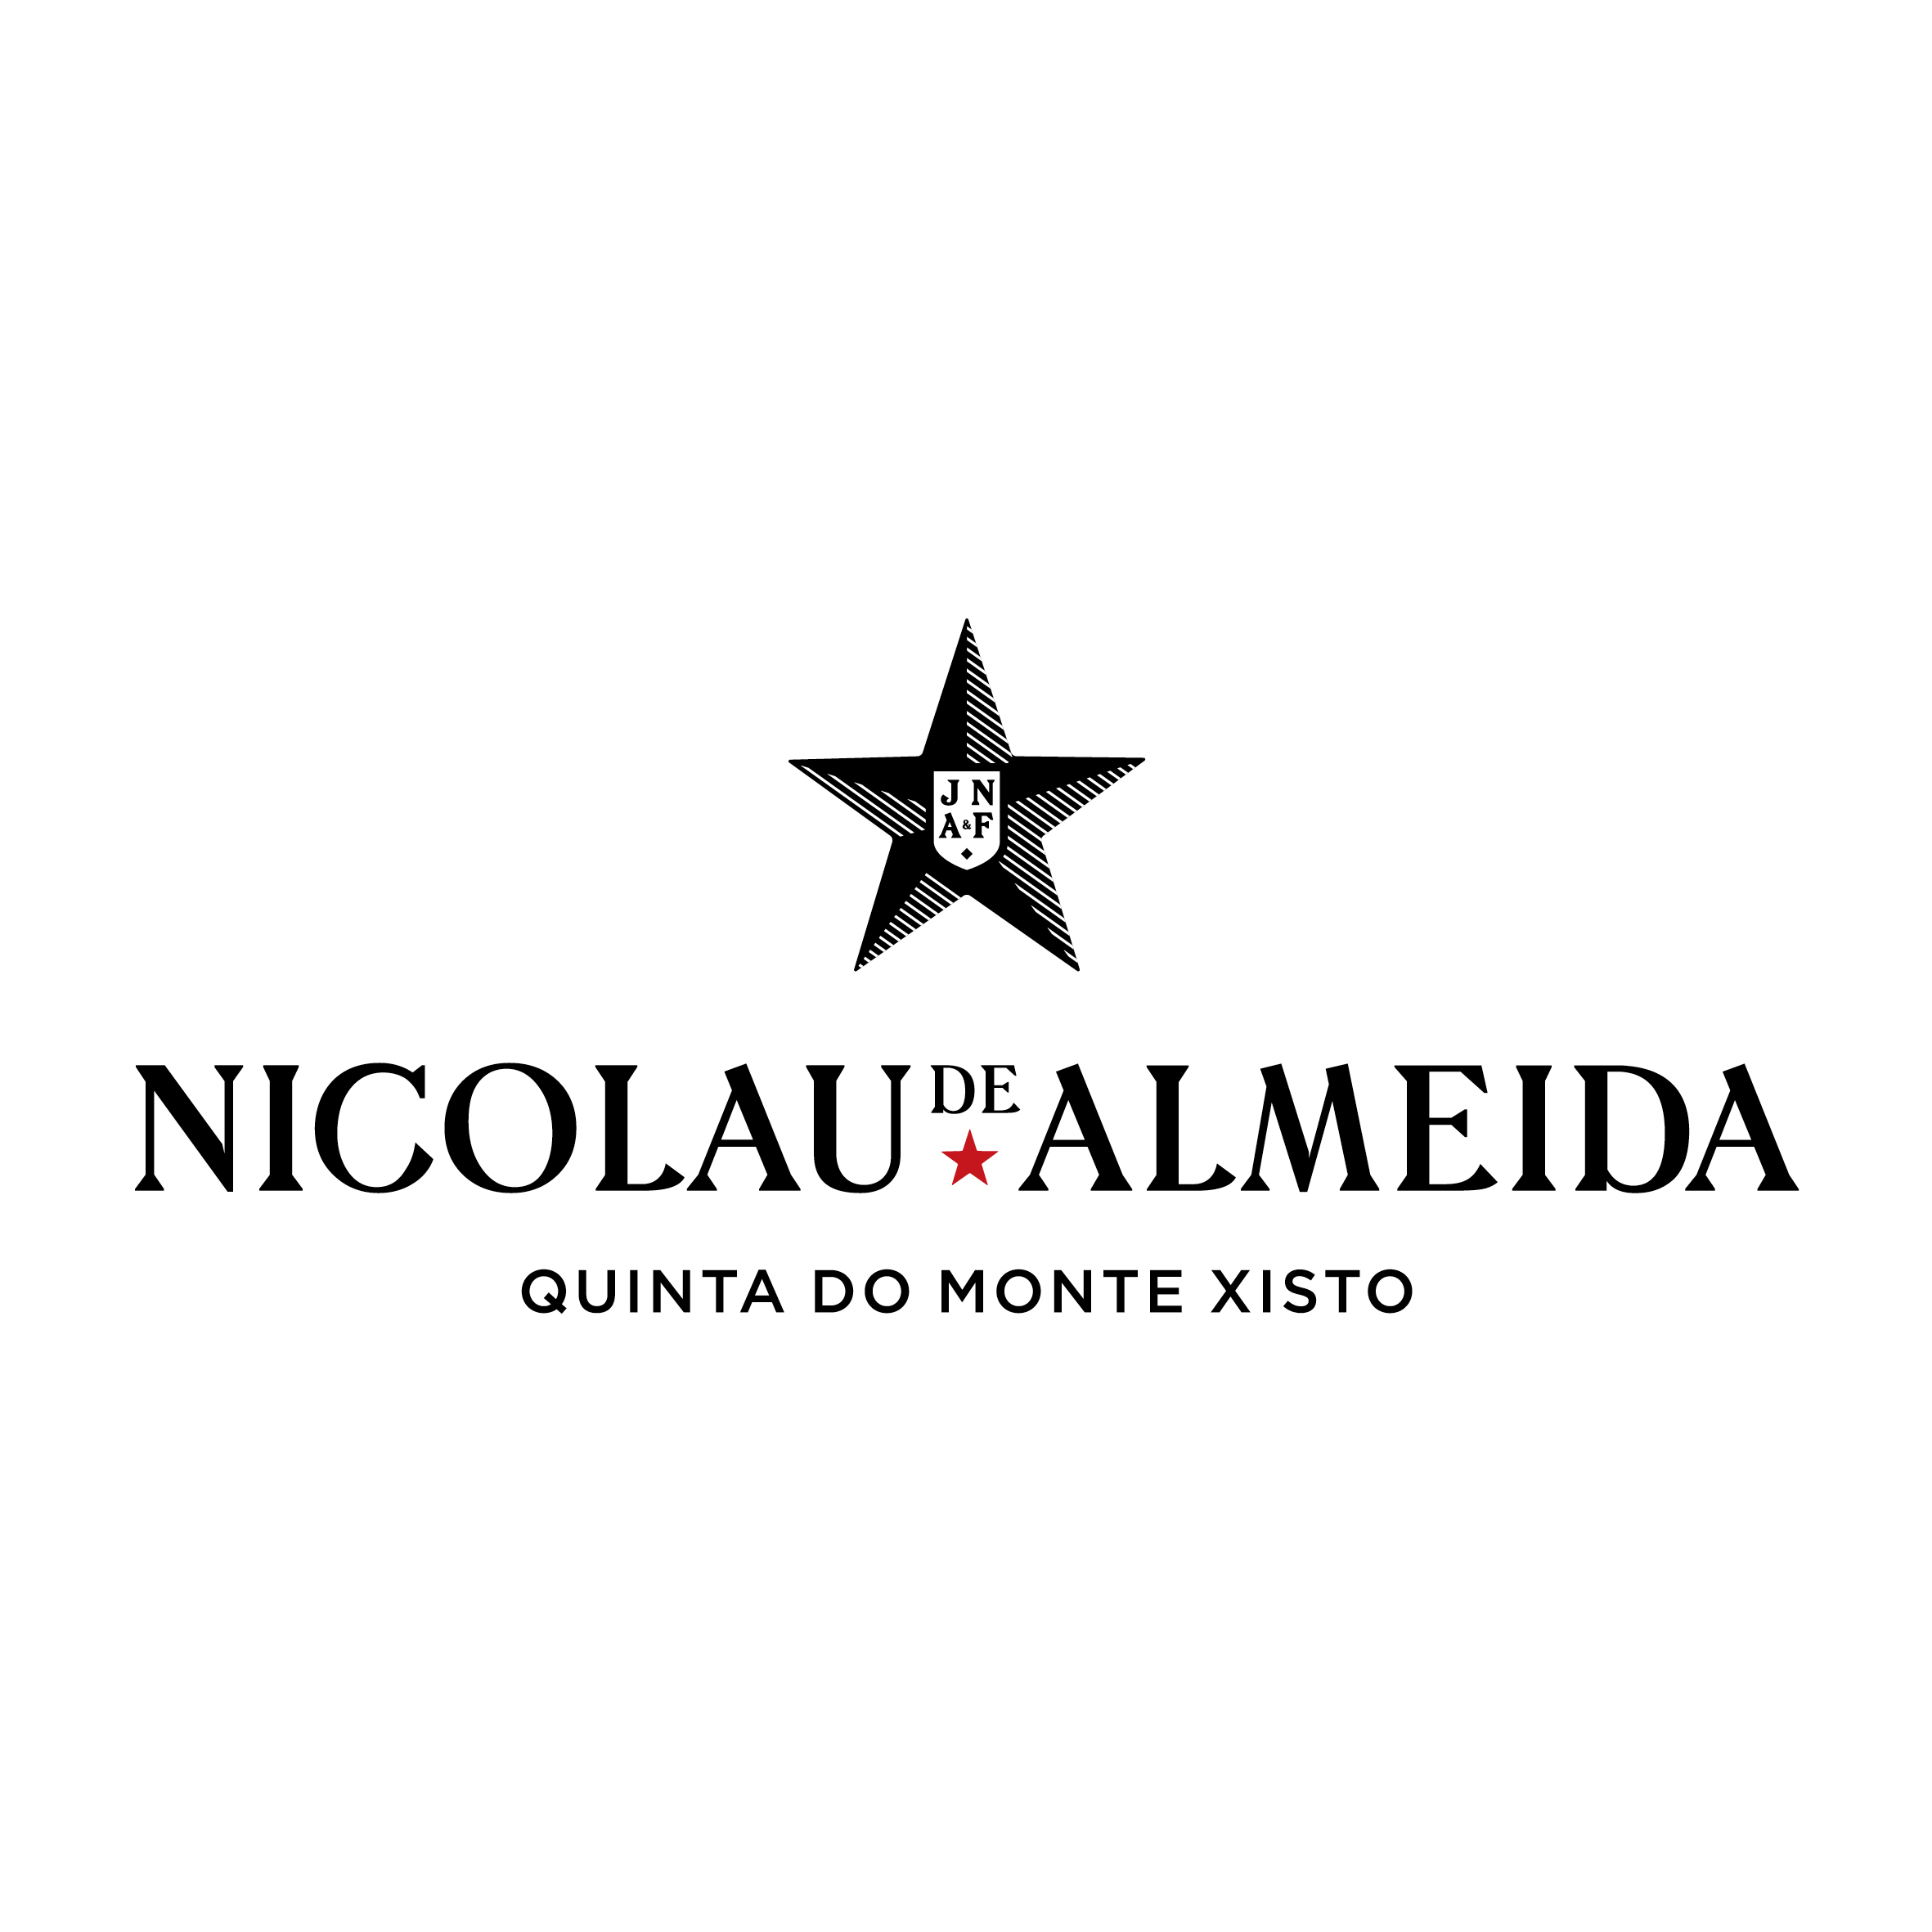 Nicolau de Almeida